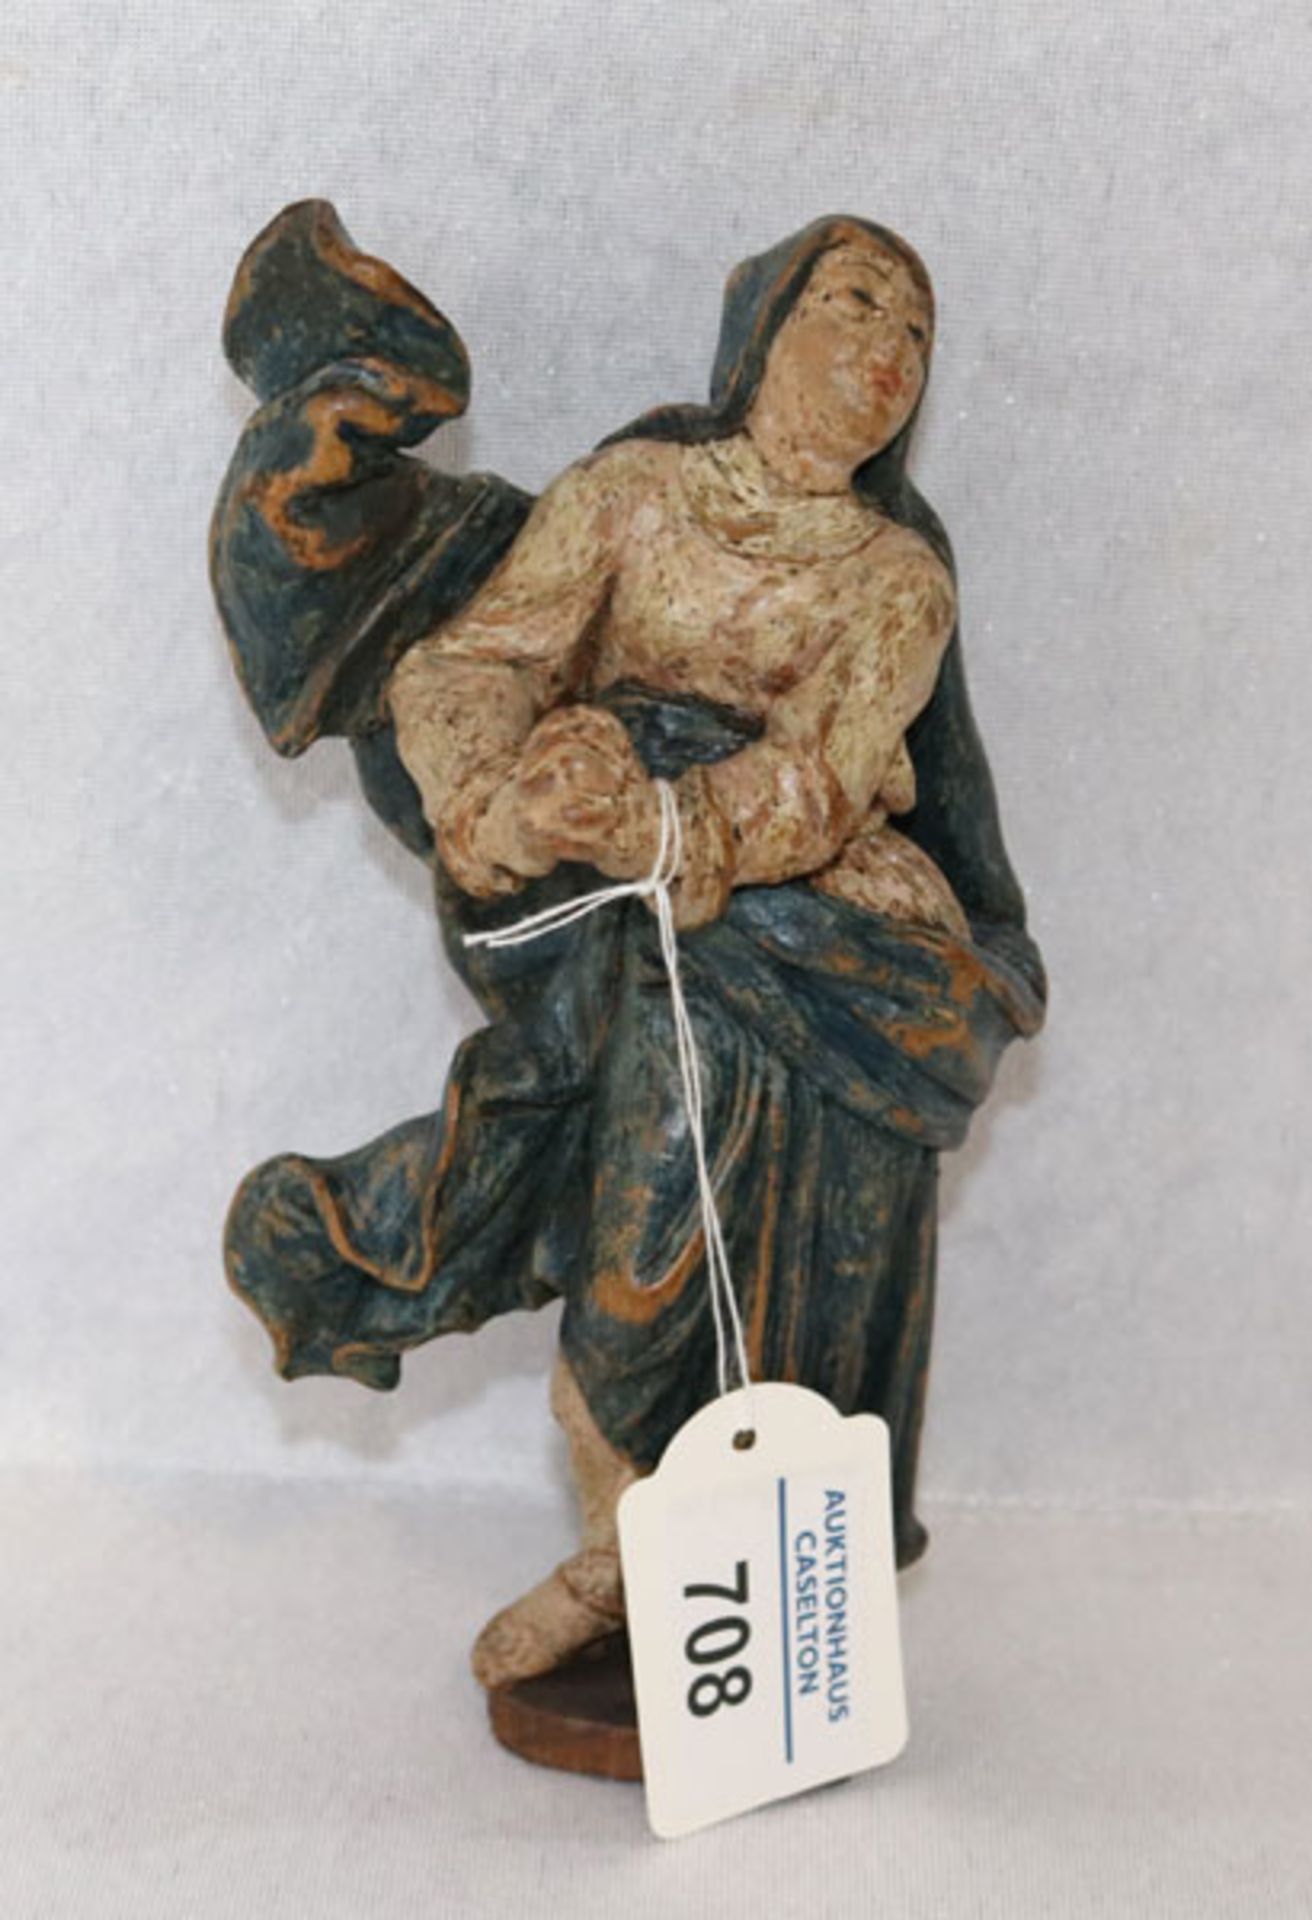 Holz Figurenskulptur 'Magdalena', wohl Assistenzfigur, farbig gefaßt, 19. Jahrhundert, H 17 cm,